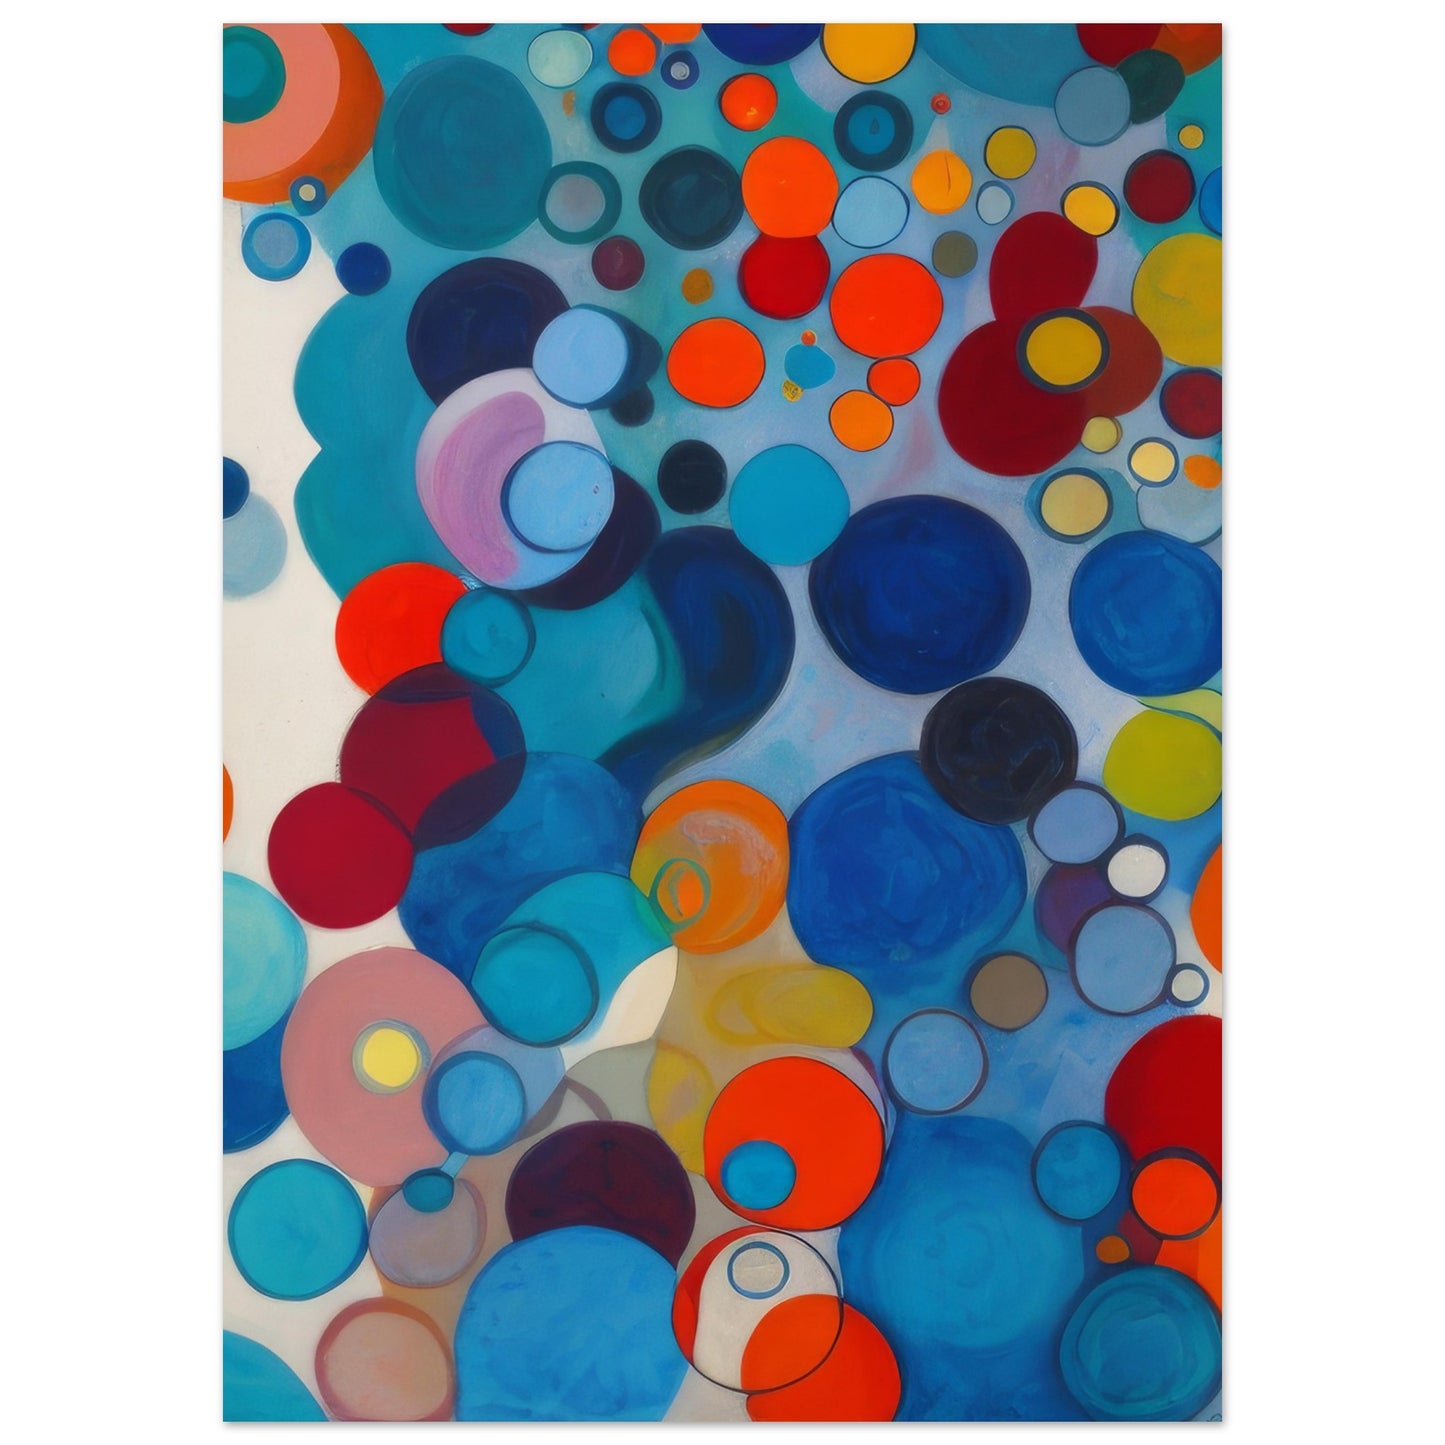 Sparkling - Abstract Wall Art Print Blue Circles